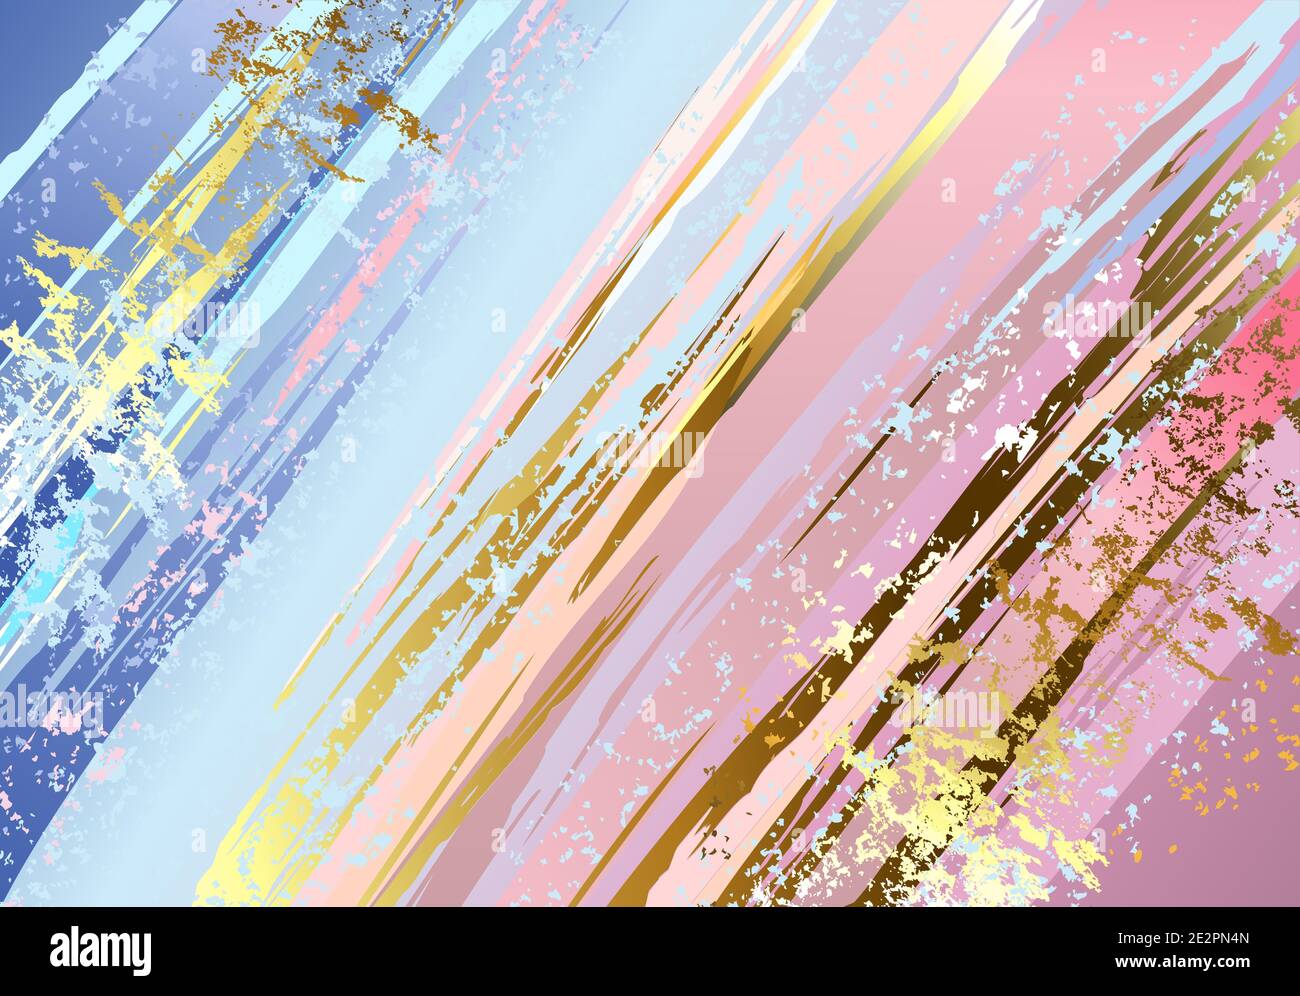 Arrière-plan texturé rose et bleu, peint avec de grands traits de pinceau, décoré de feuilles d'or. Texture grunge. Illustration de Vecteur